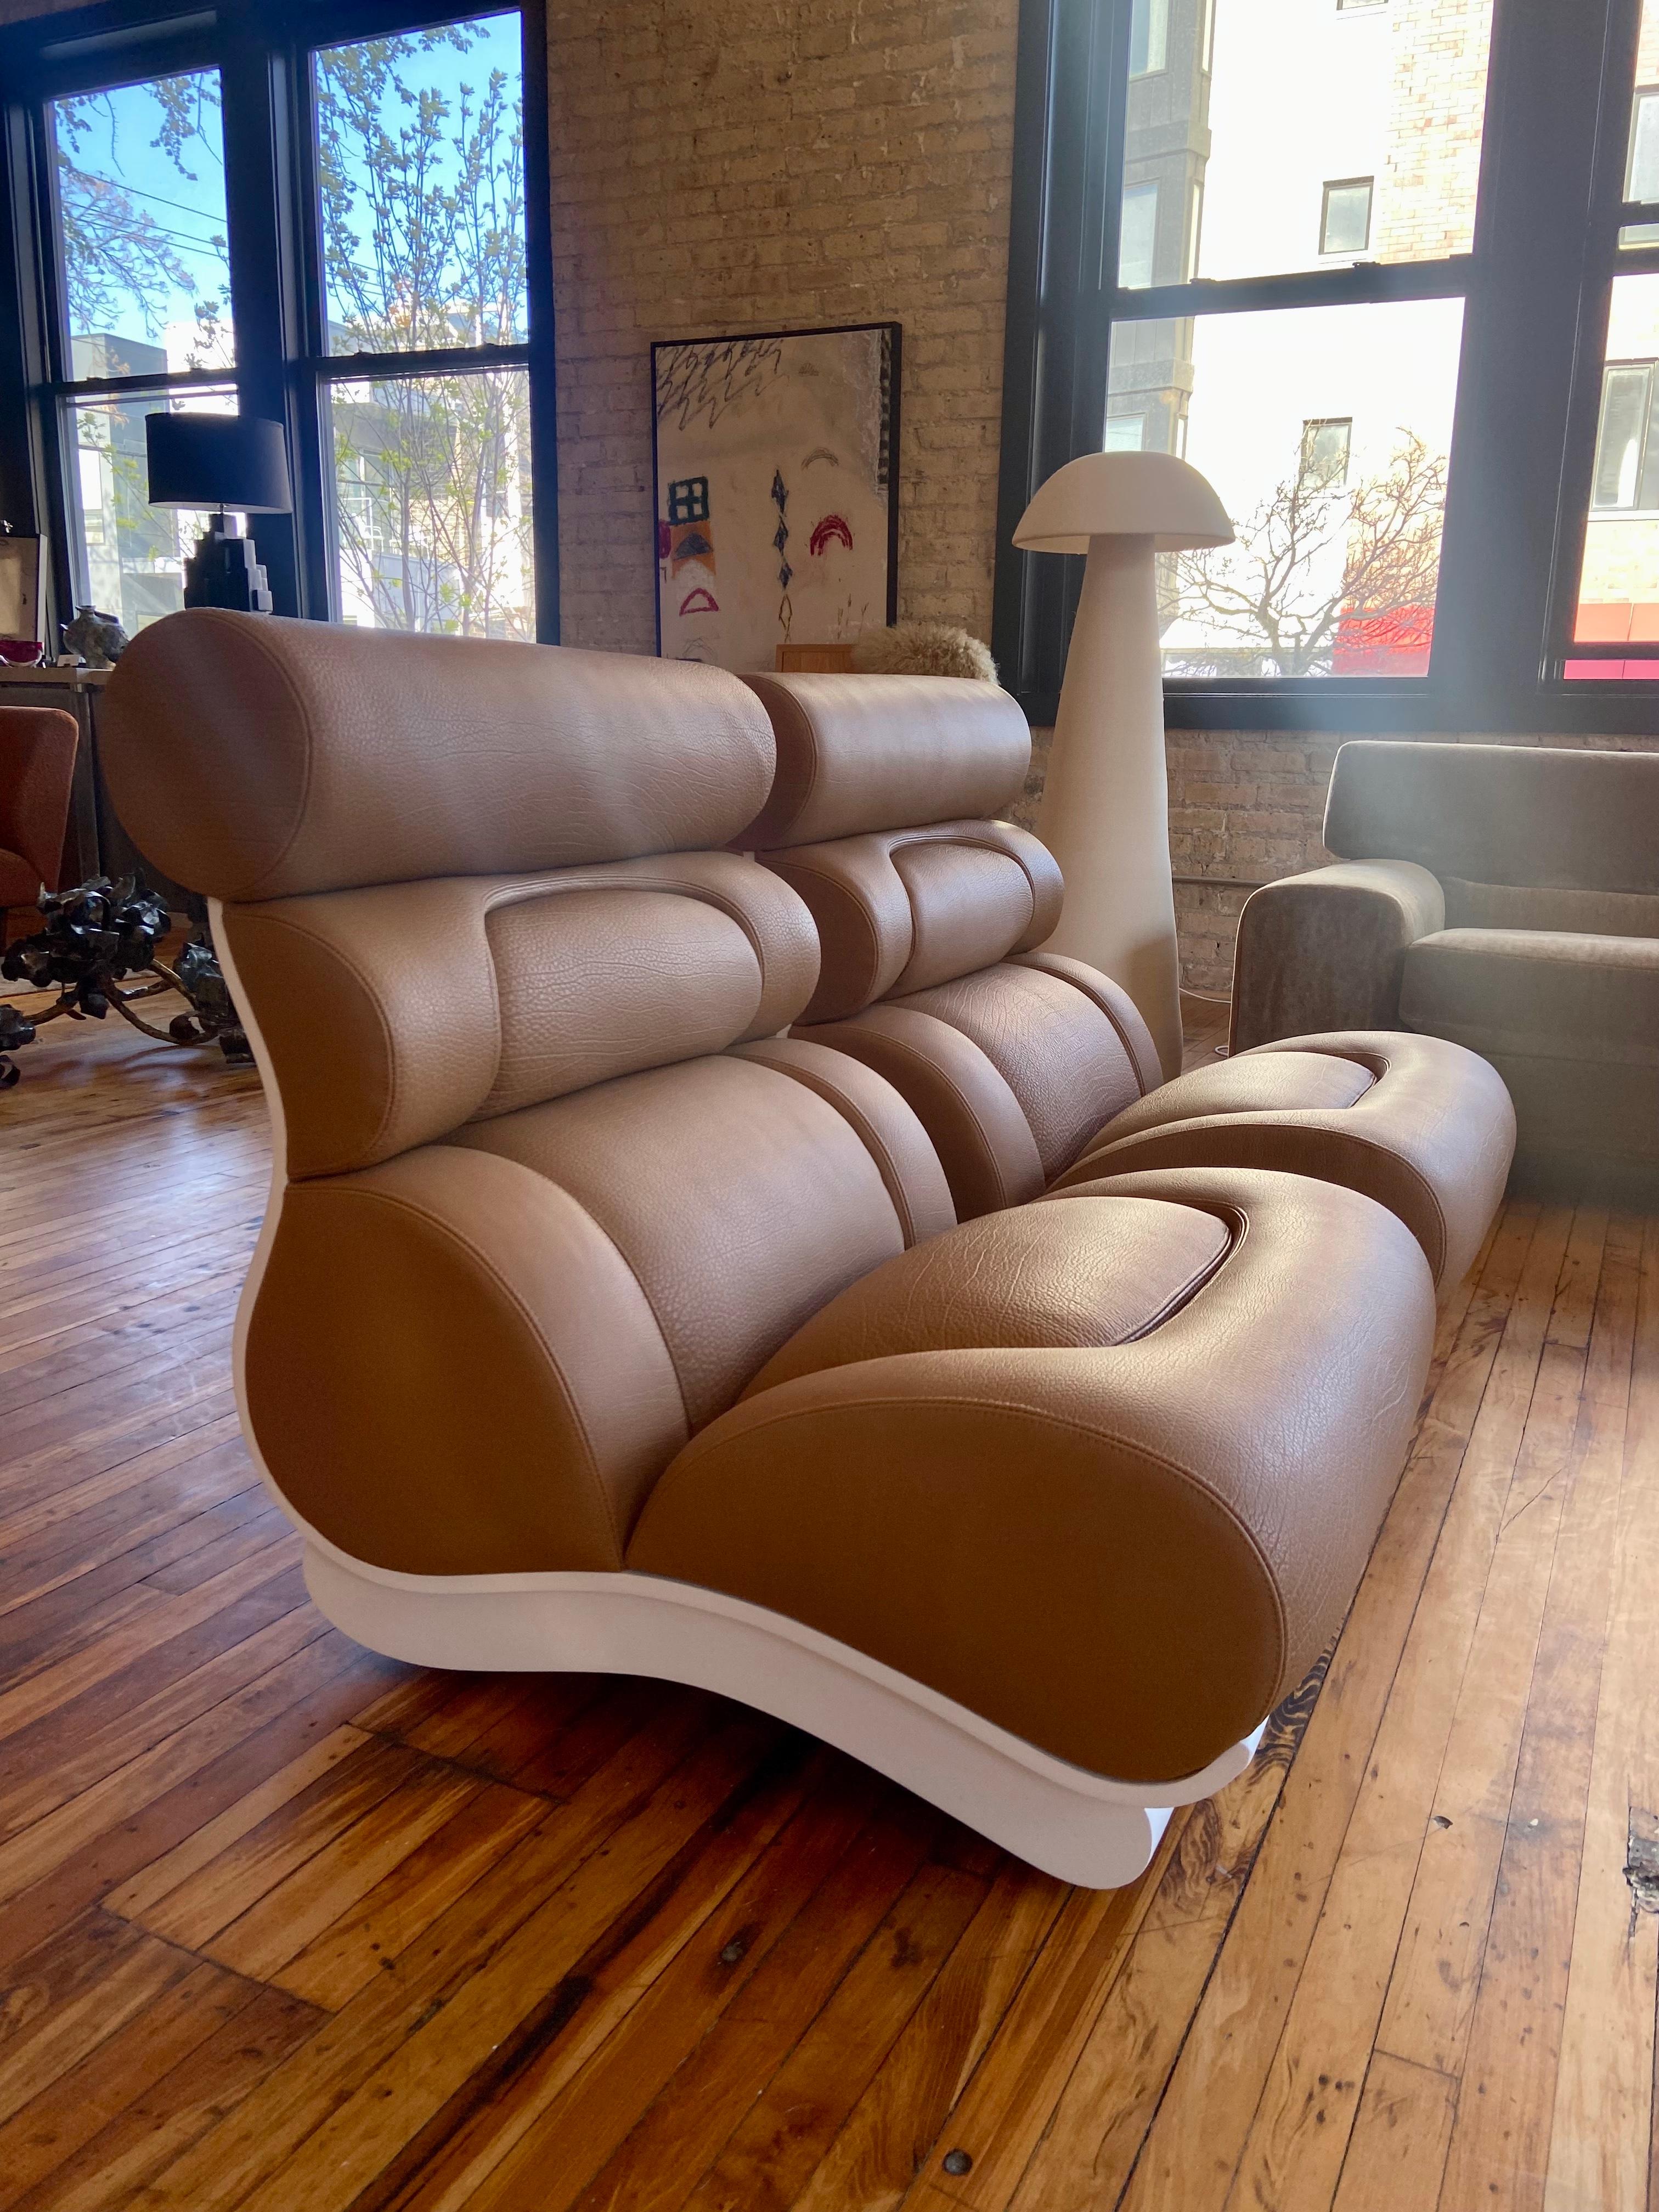 Unglaublich coole Loungesessel von Raphael Raffel, ca. 1960er Jahre. Die gerollte, ergonomische Rückenlehne und die Sitzstützen schaffen ein unverwechselbares Profil, das an das Design von Automobilen erinnert. Es mag überraschen, dass die